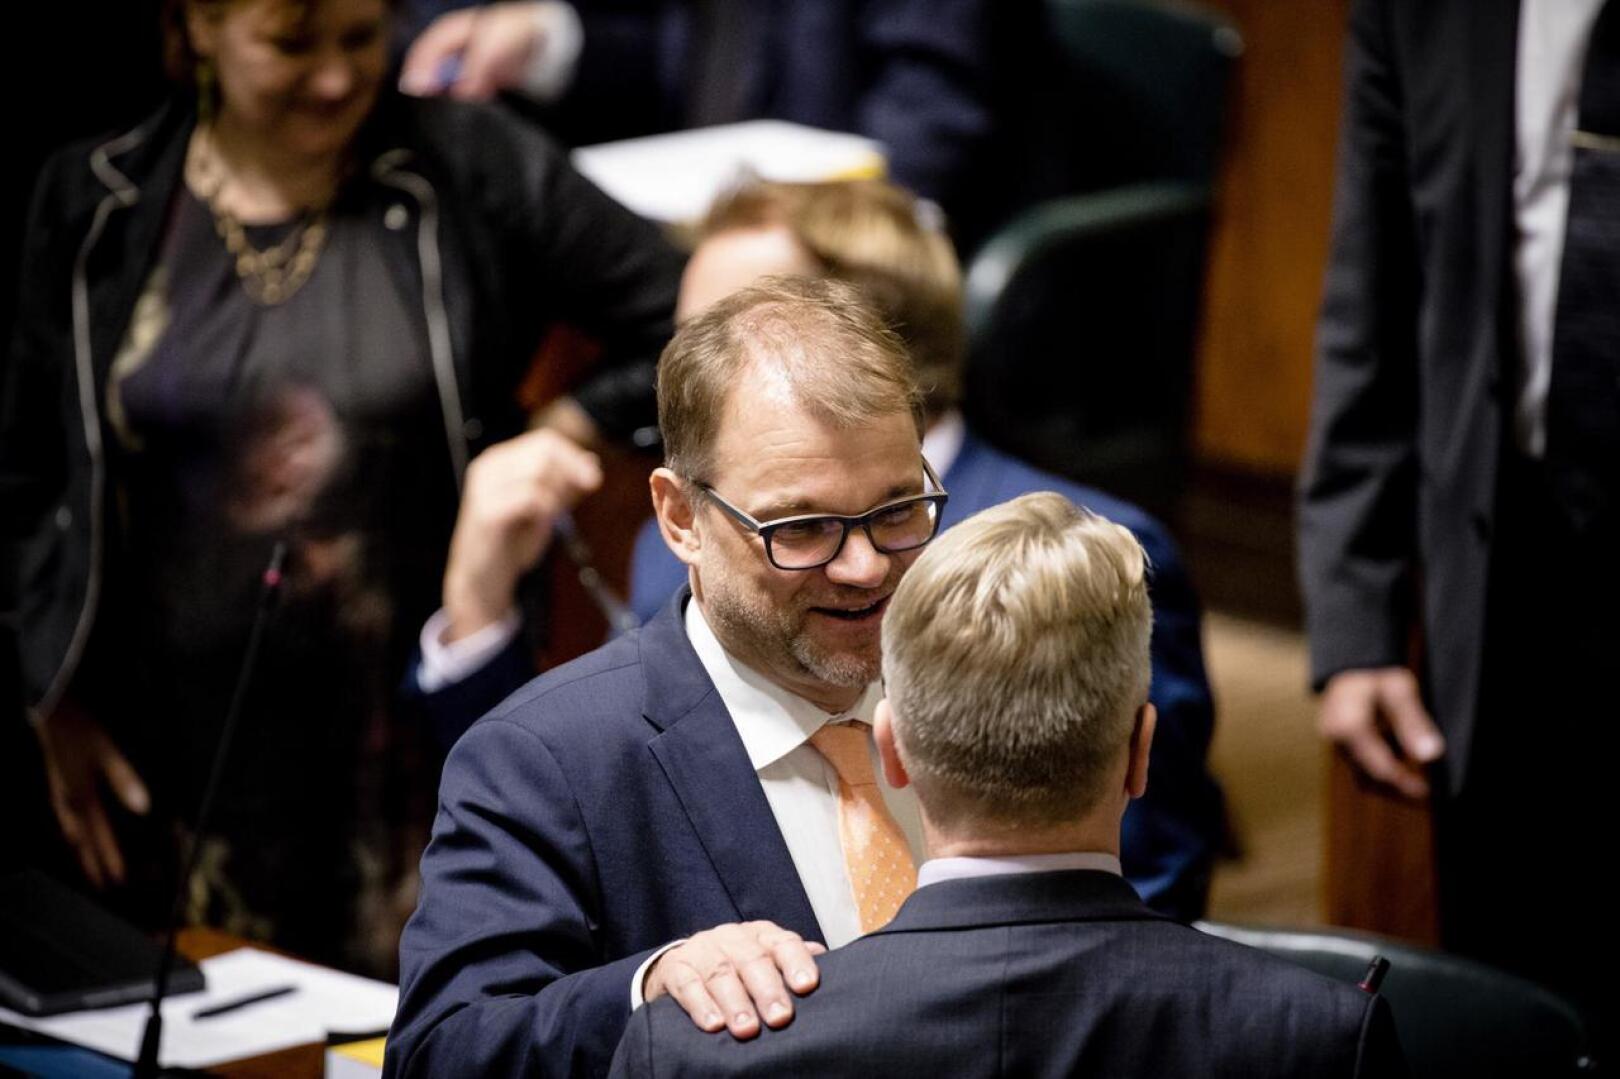 Pääministeri Juha Sipilä ja hallitusta tukenut kansanedustaja Peter Östman (kd.) ennen ratkaisevaa äänestystä, jossa Östman tuki hallitusta.